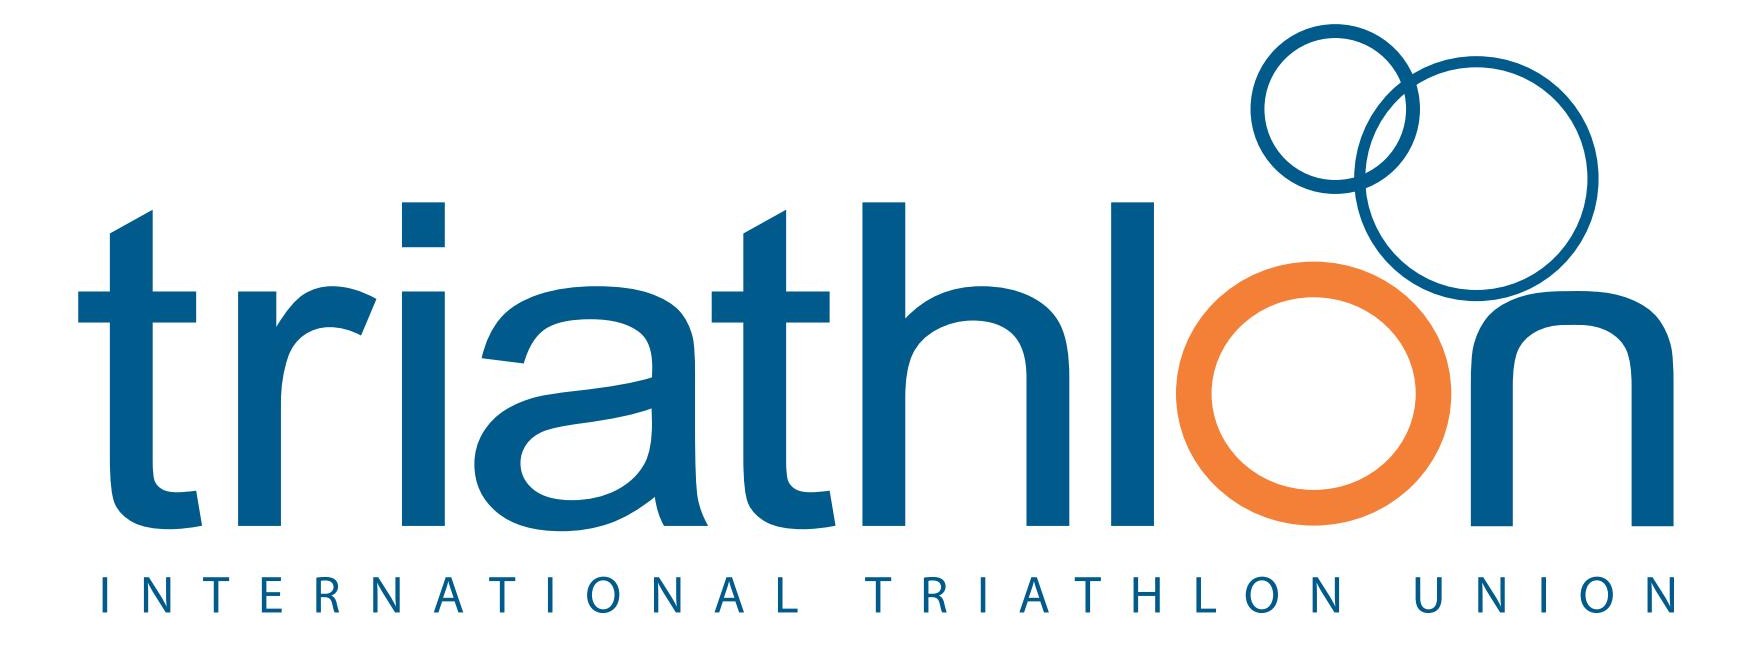 International-Triathlon-Union-ITU-logo.jpg